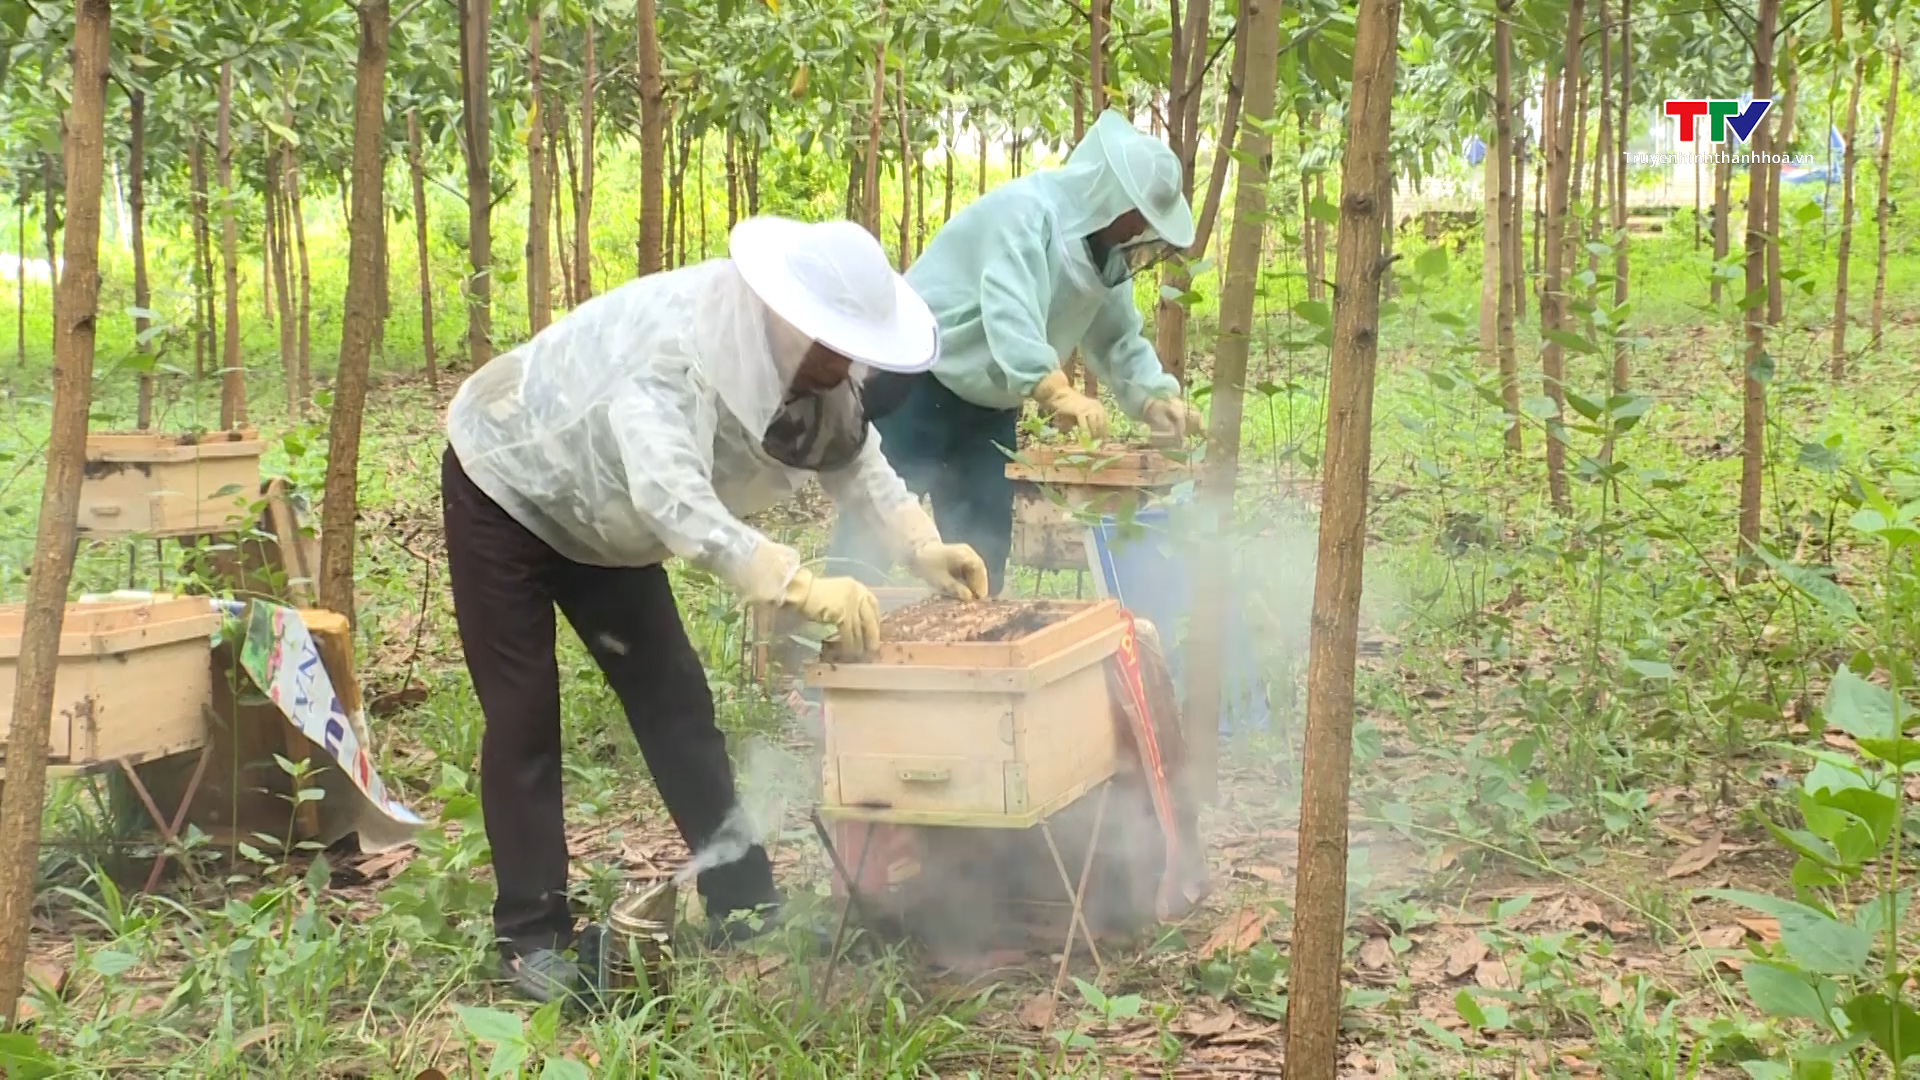 Hợp tác xã ong mật Thành Kim sản xuất theo tiêu chuẩn VietGap - Ảnh 4.